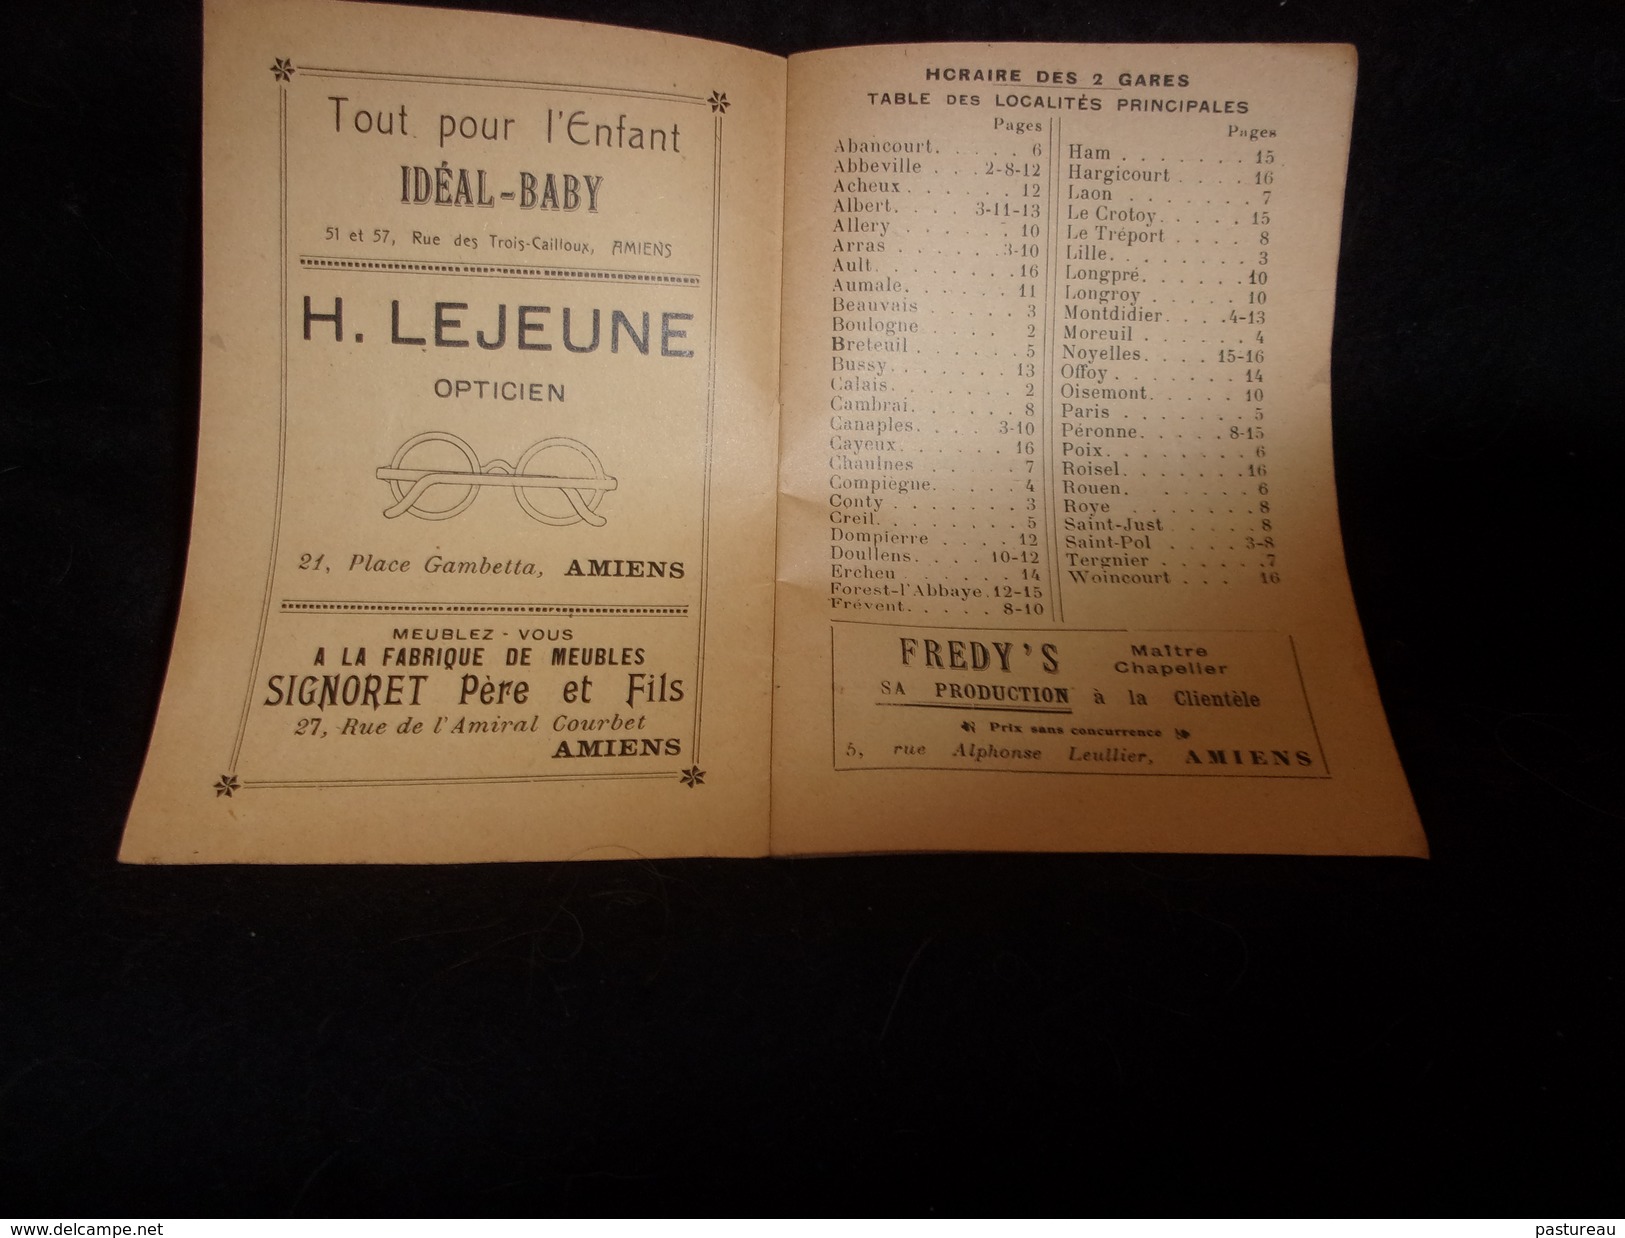 Amiens.Livret ' D ' Horaire Des 2 Gares.18 Pages .1931.Nombreuses Publicités Bière Delaporte Déménagement Etc.10 Scans - Europe